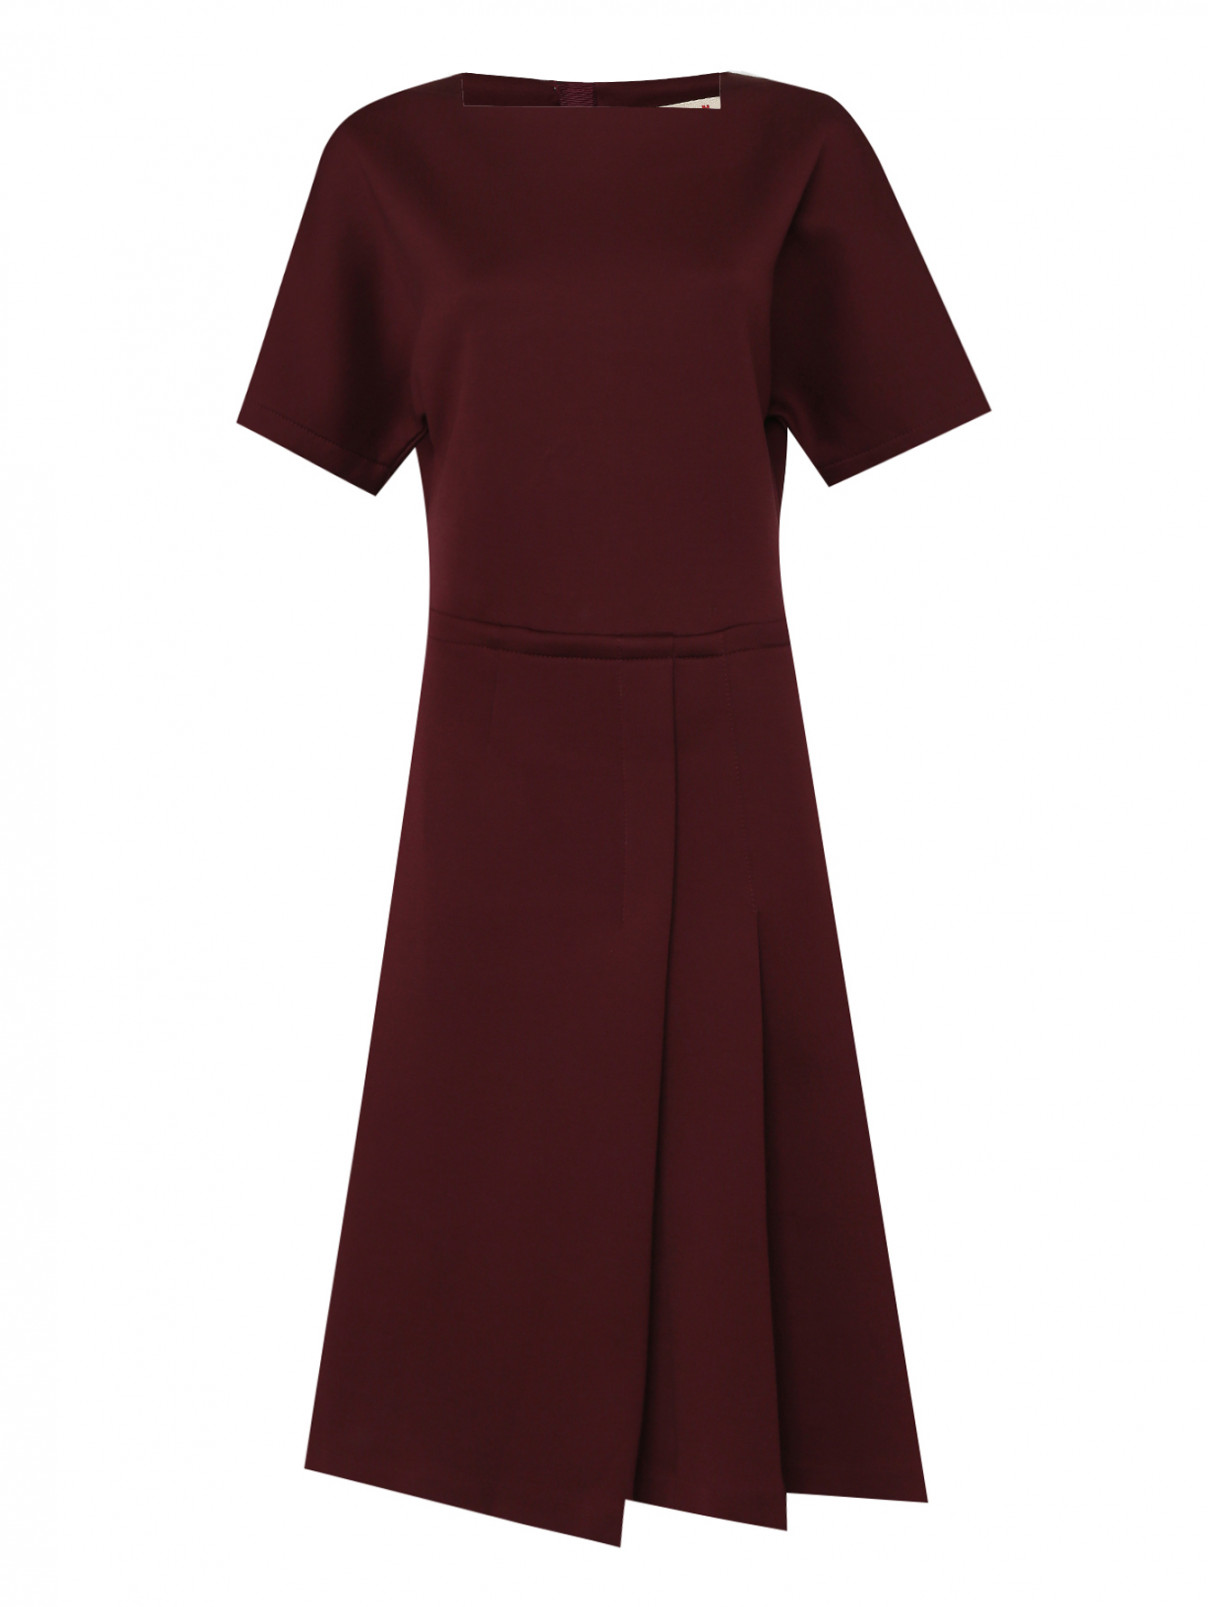 Платье из хлопка с коротким рукавом Marni  –  Общий вид  – Цвет:  Красный